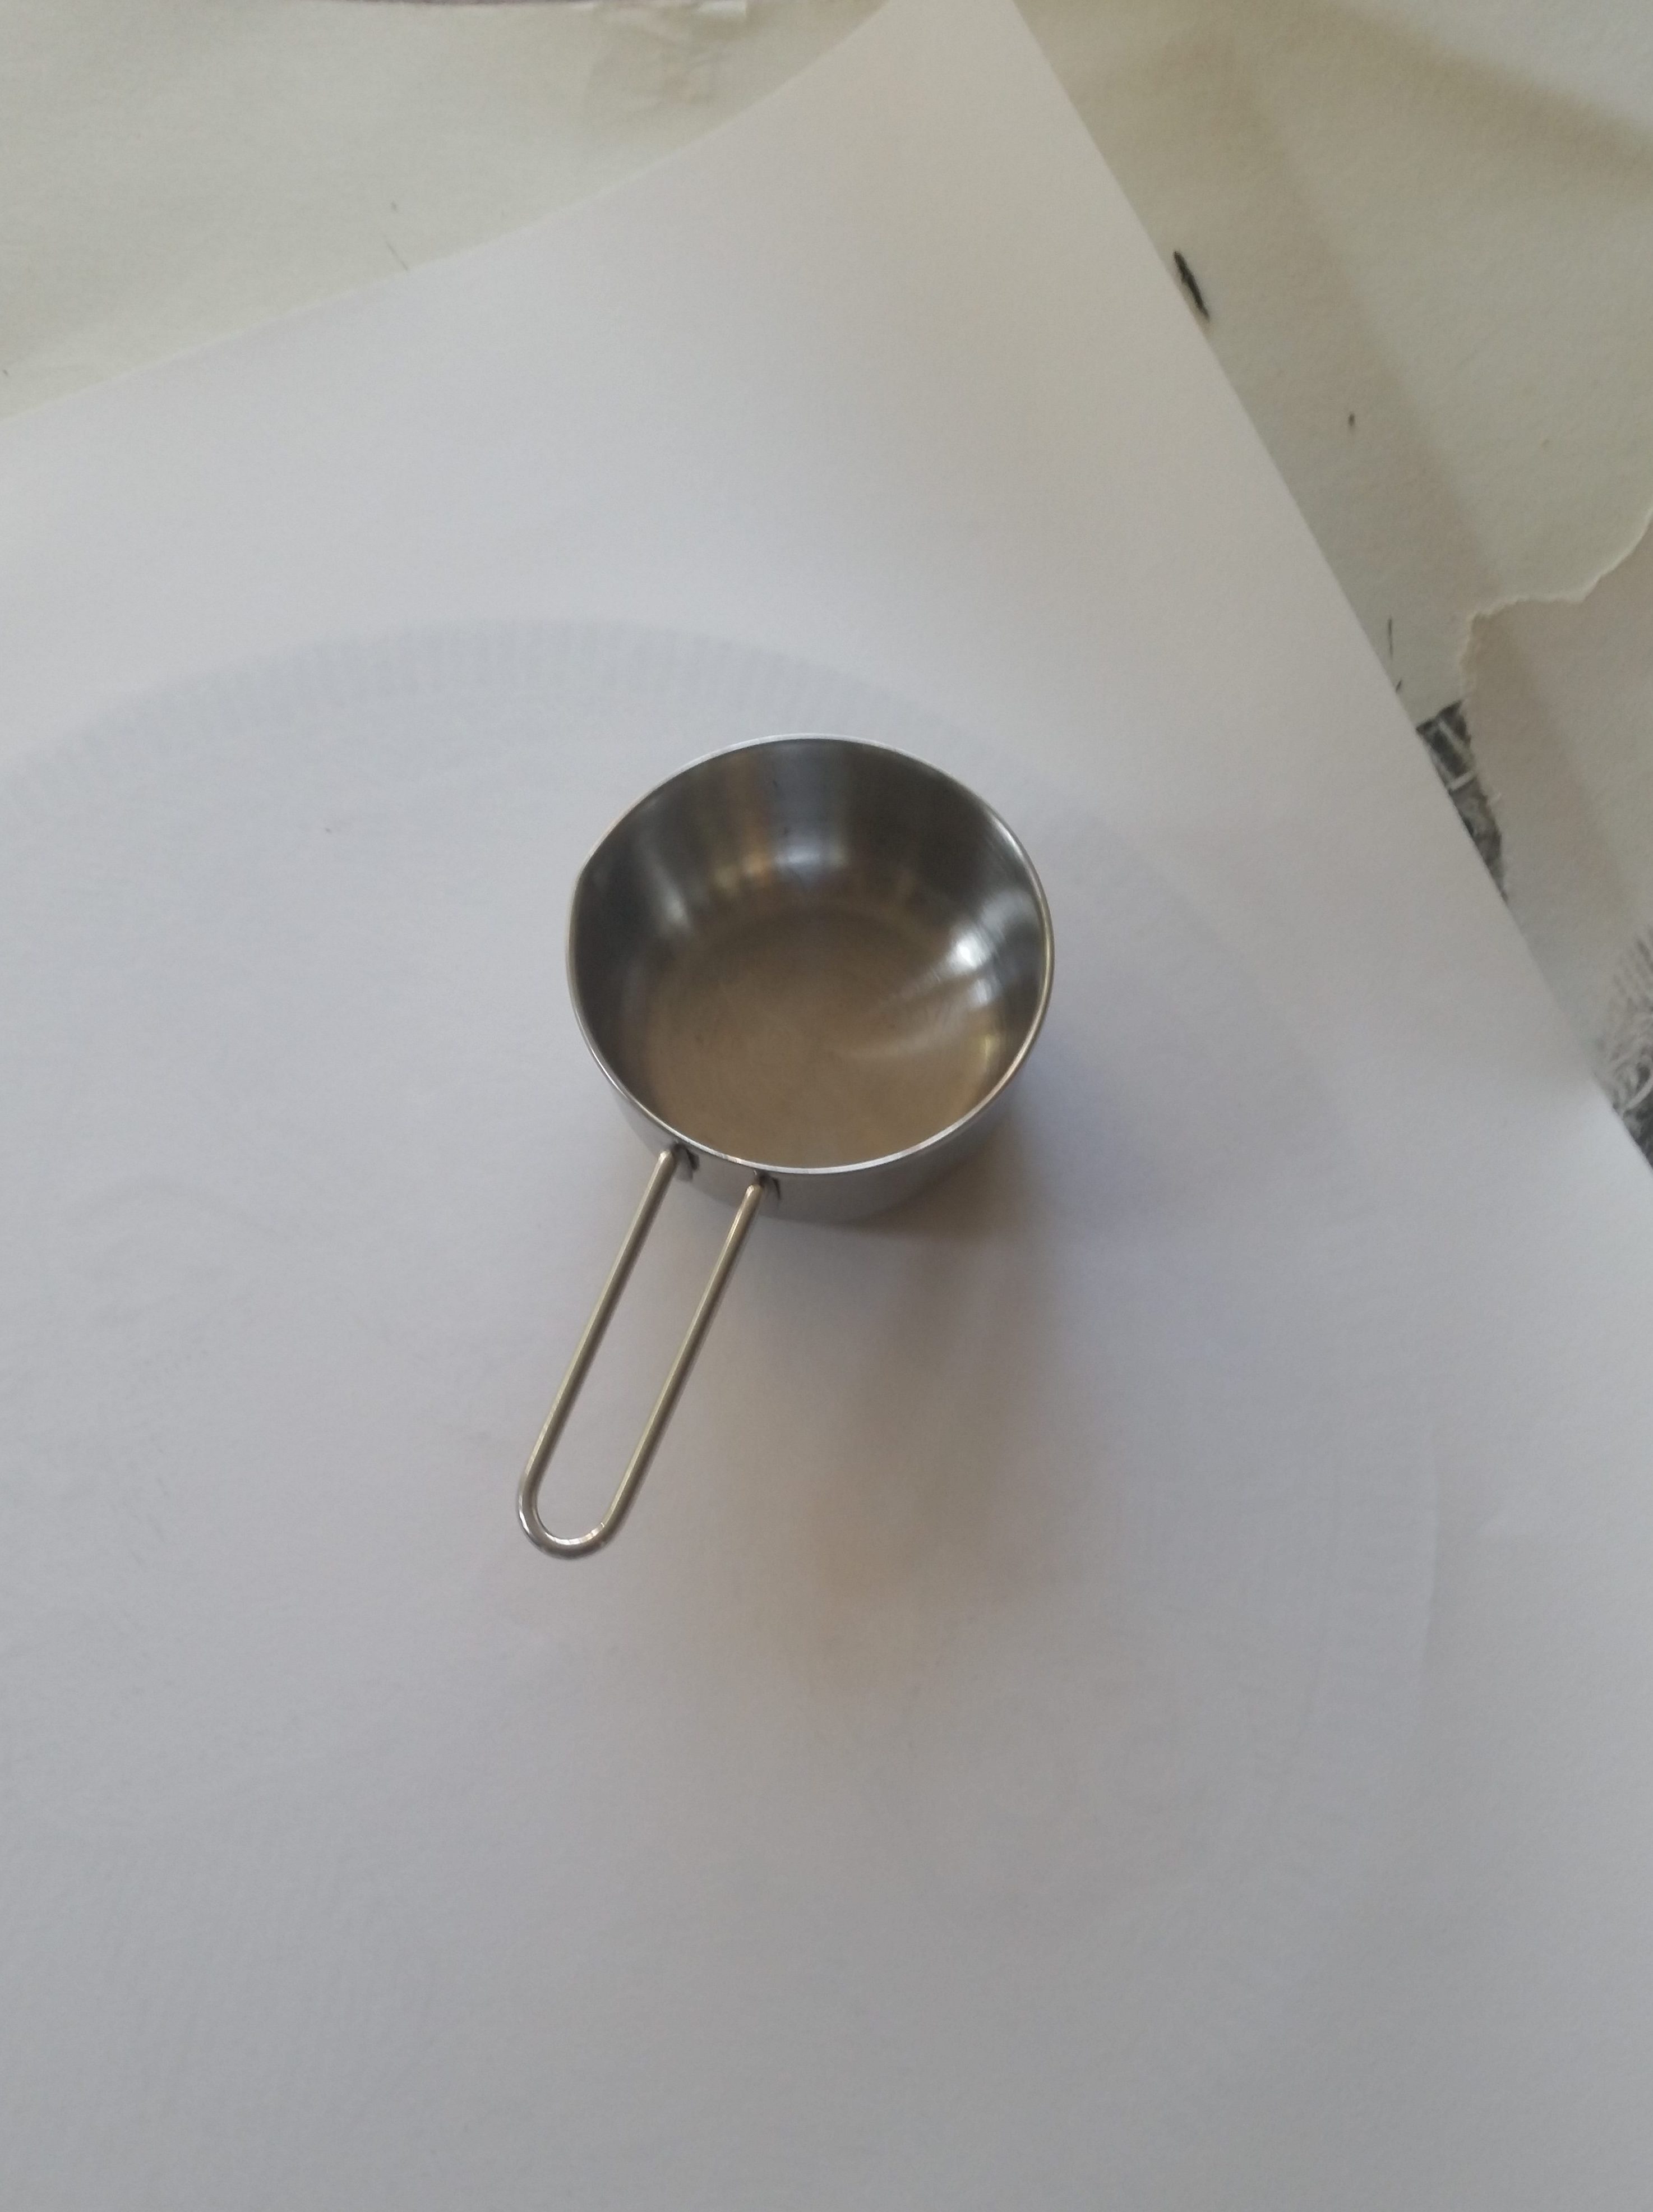 Using a measuring cup as a baren.